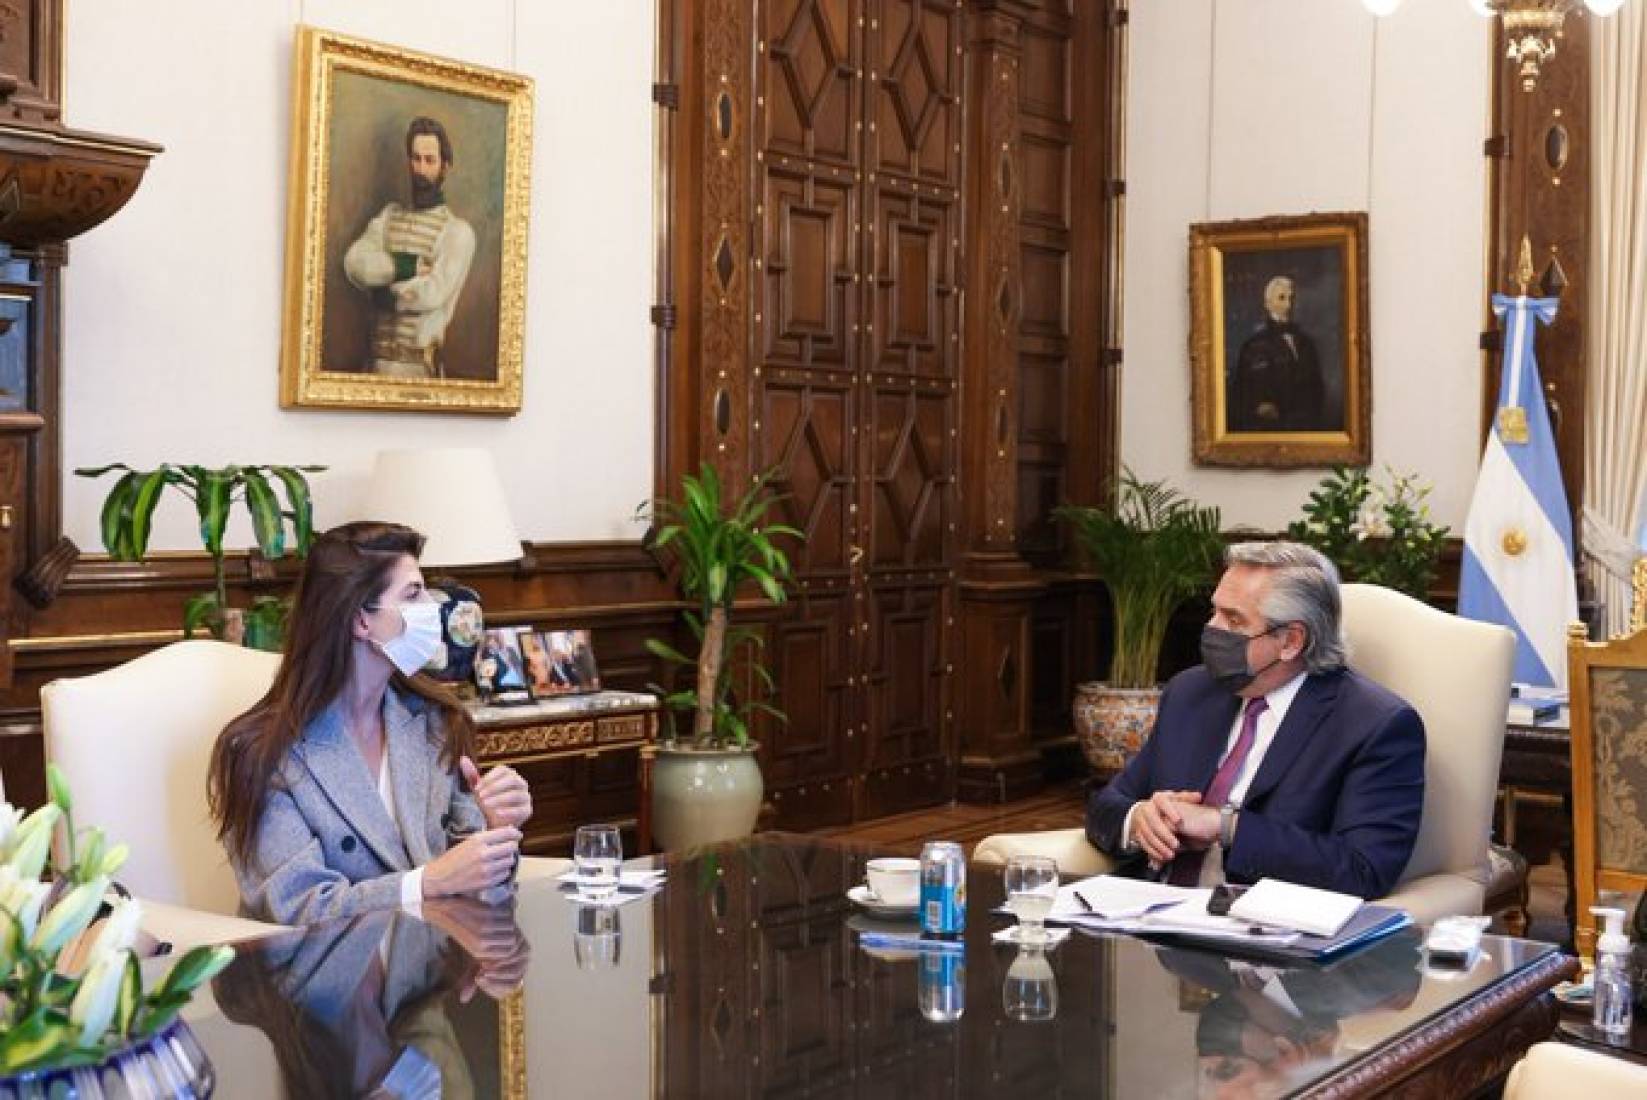 Bettina Romero se reunió con el Presidente y consiguió obras para Salta